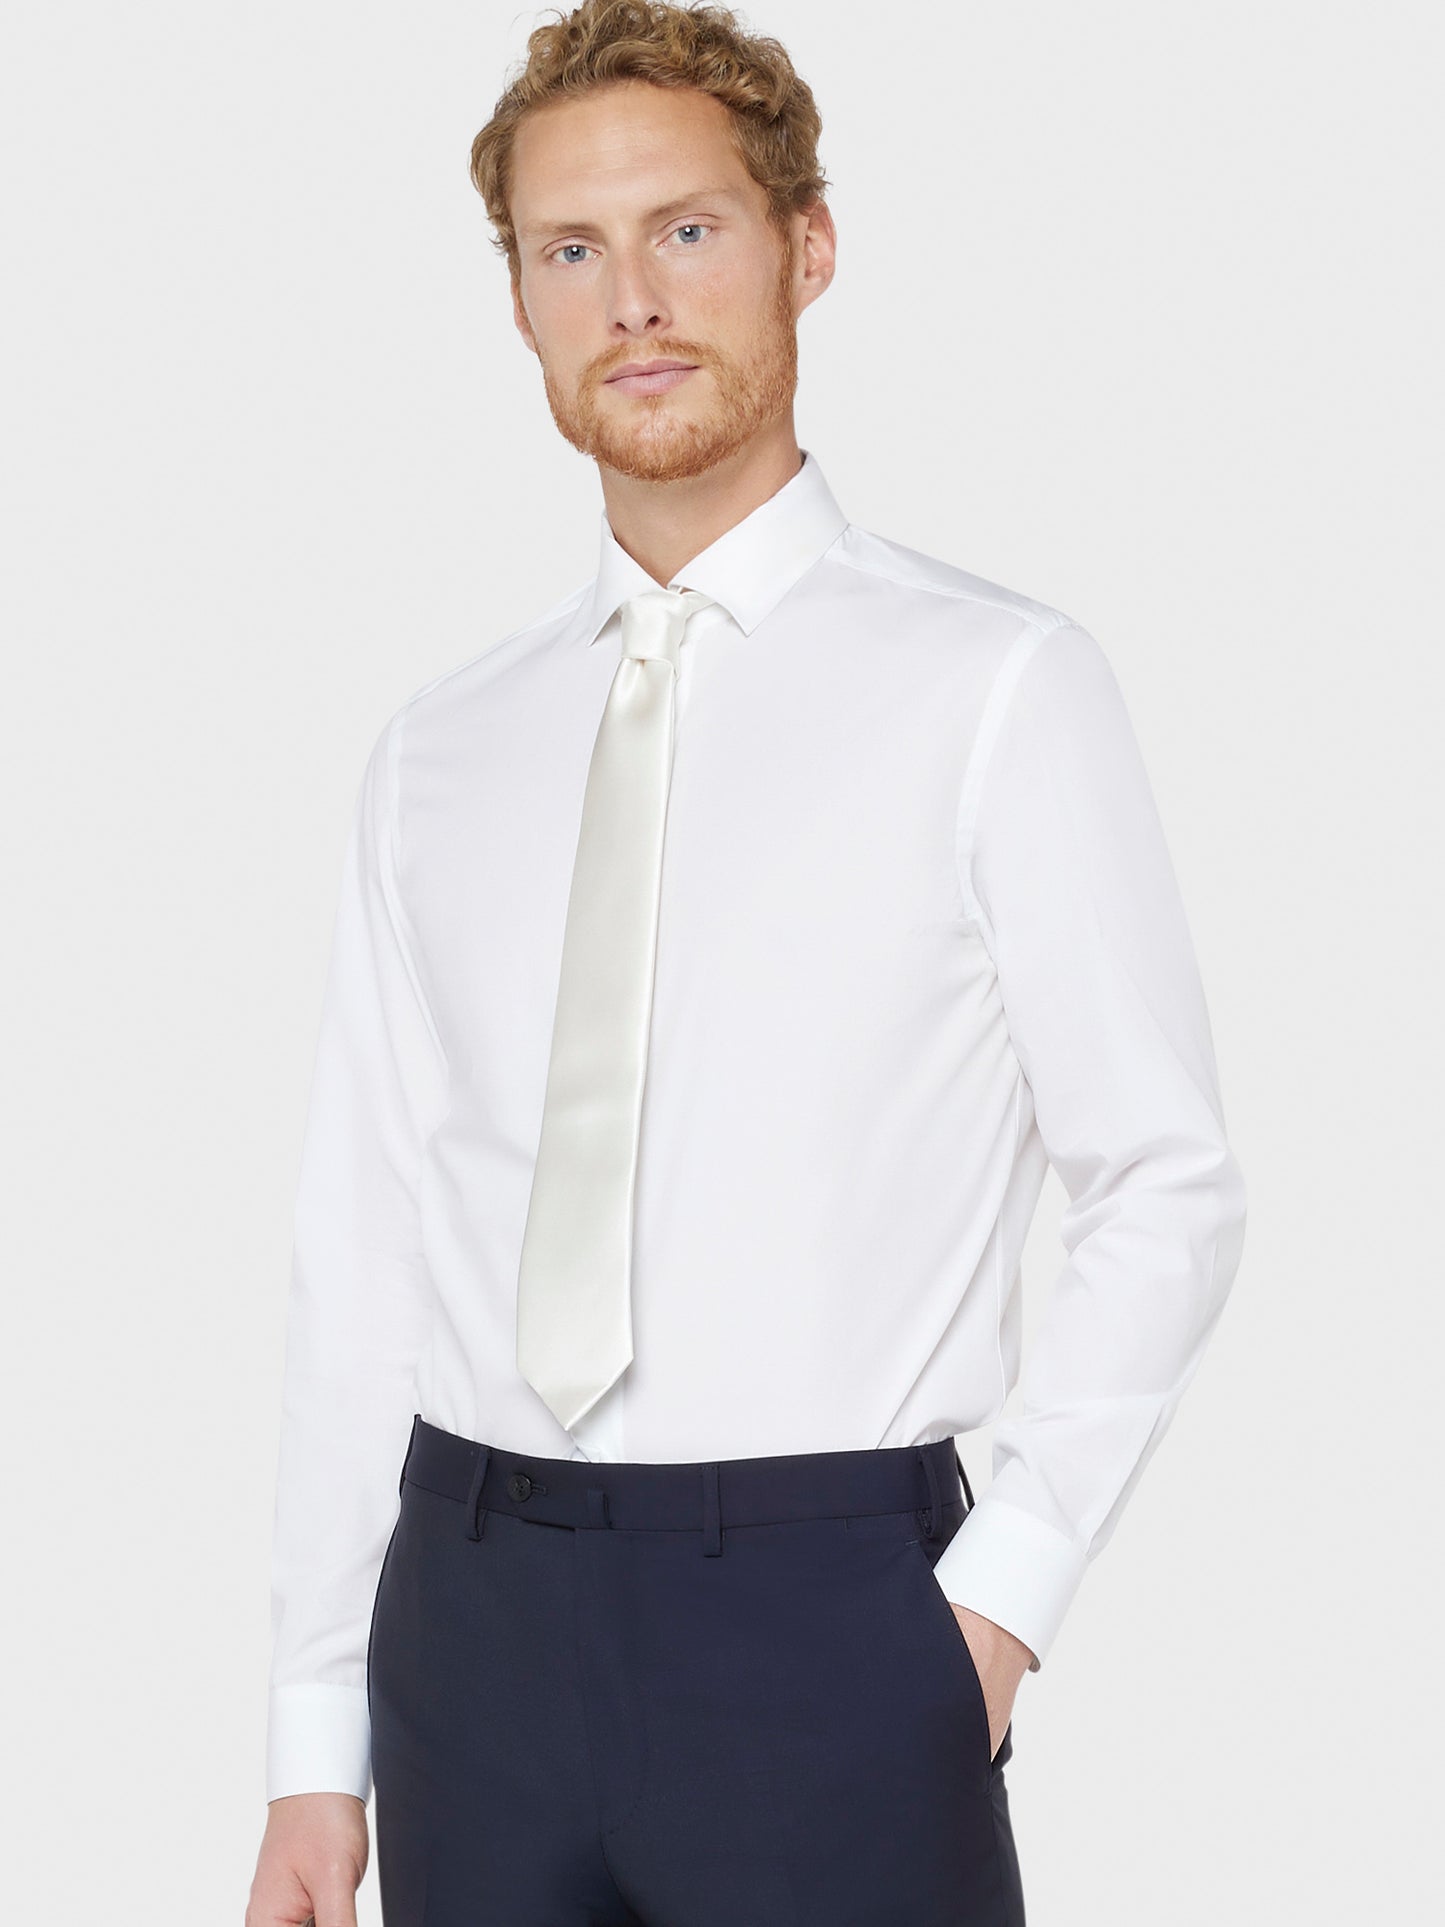 Caruso Menswear Abbigliamento Accessori Uomo Cravatta in seta bianco da annodare per cerimonie indossato